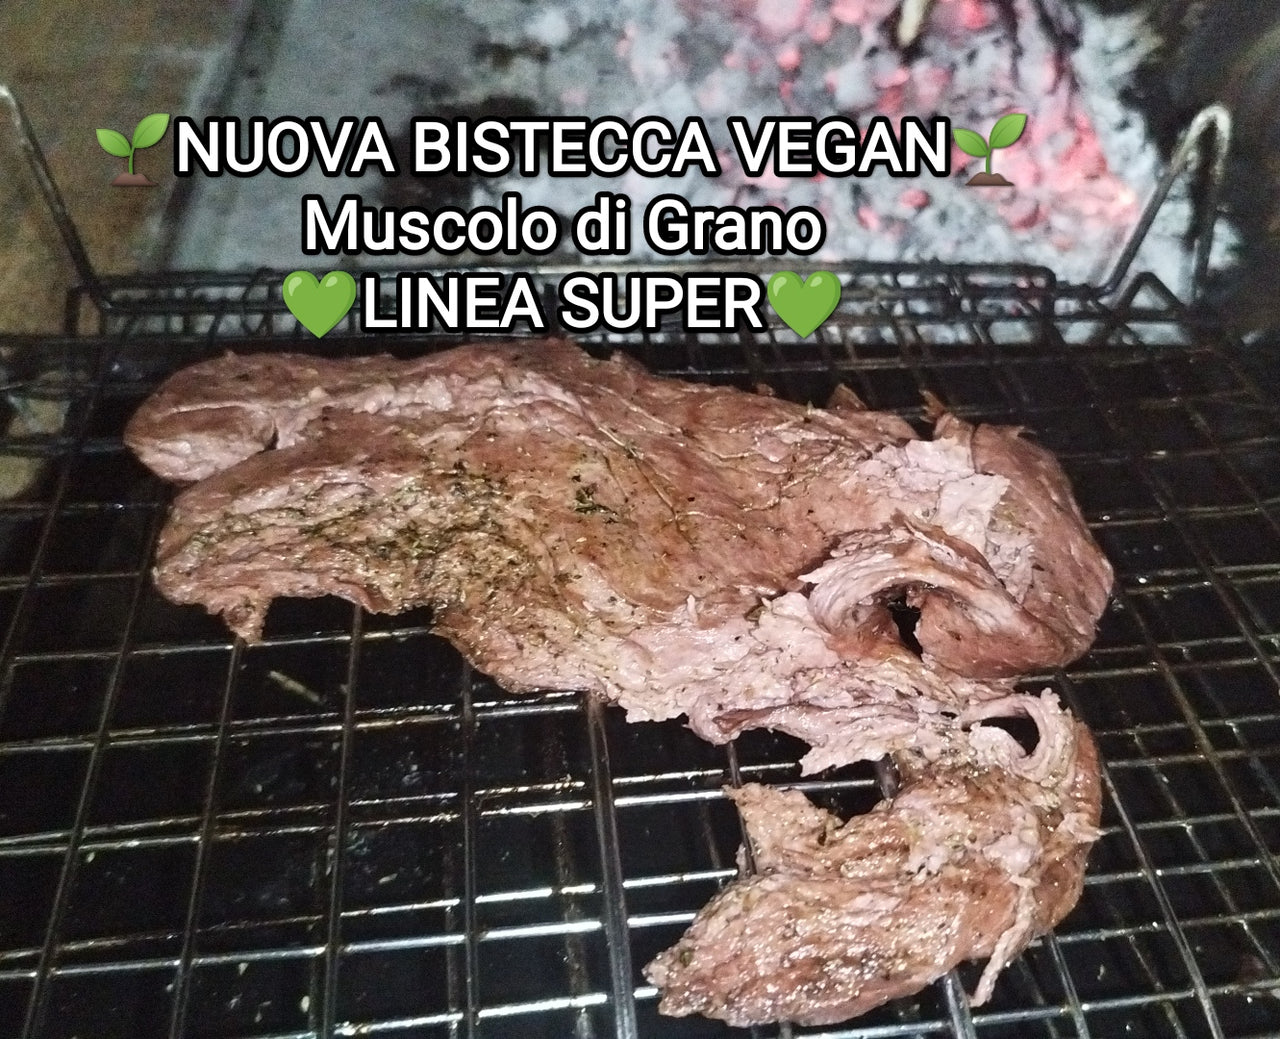 Bistecca vegan Muscolo di Grano, 250 gr, in edizione limitata